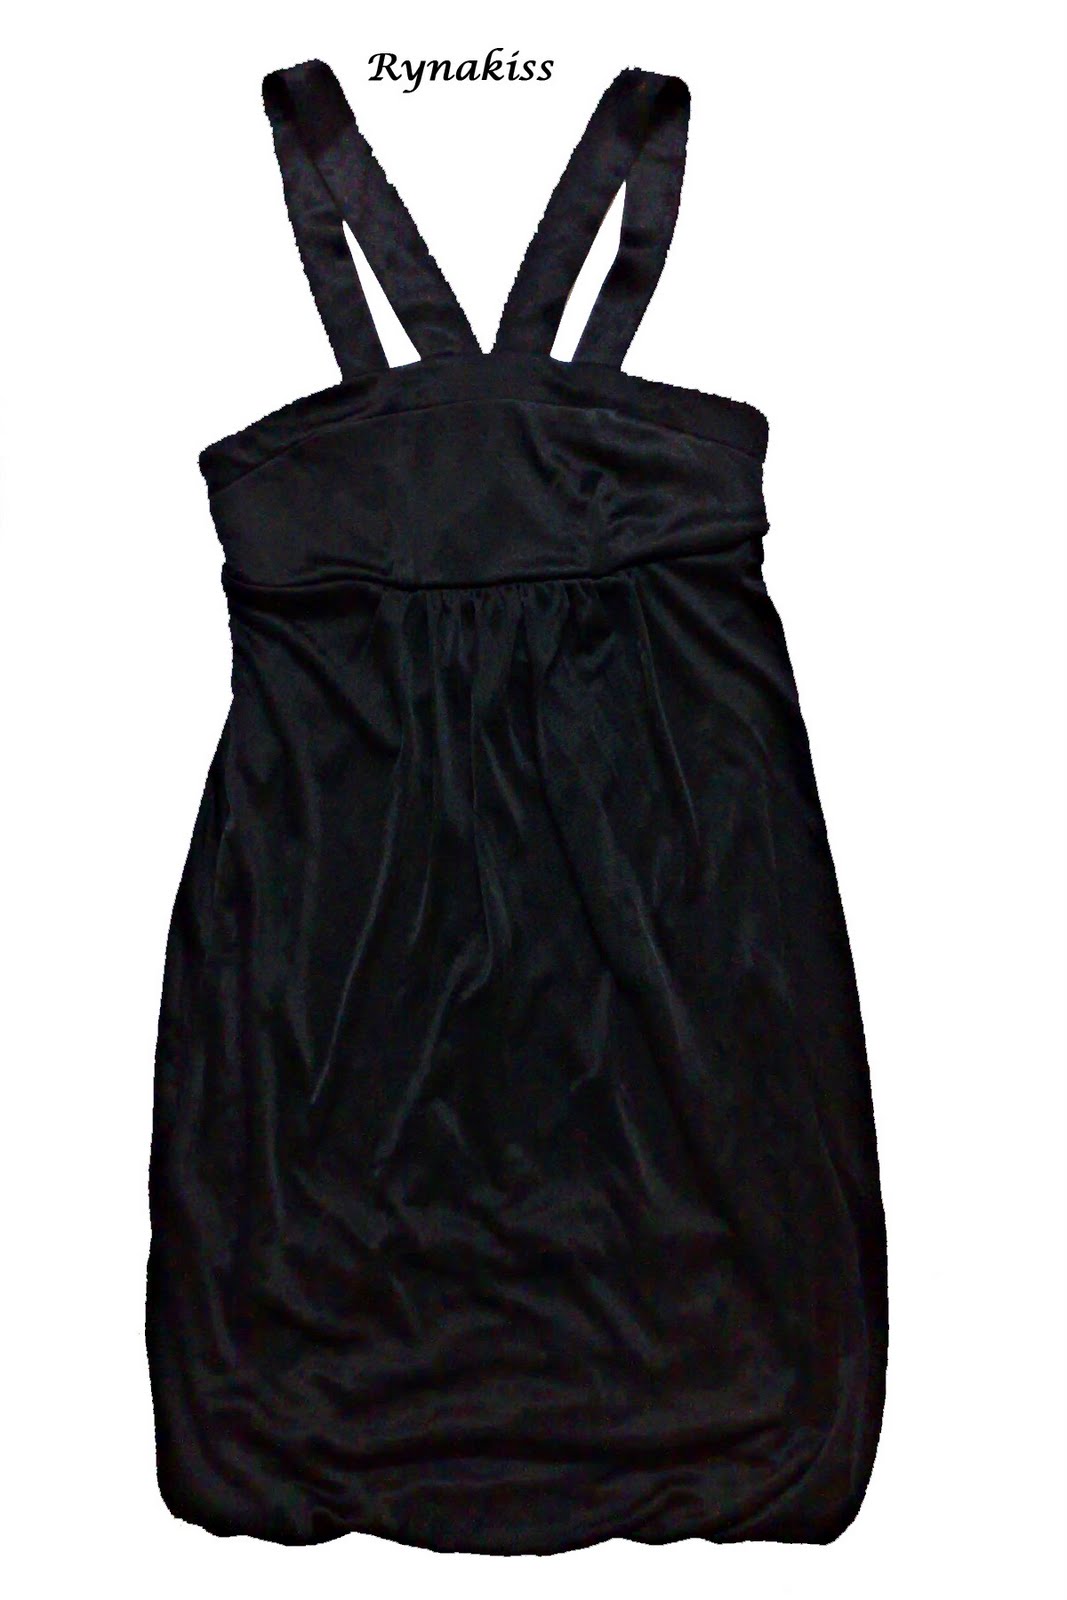 LS+Matinee+Nylon+Black+Sexy+Dress+-+Stylish+Nightie+S.jpg